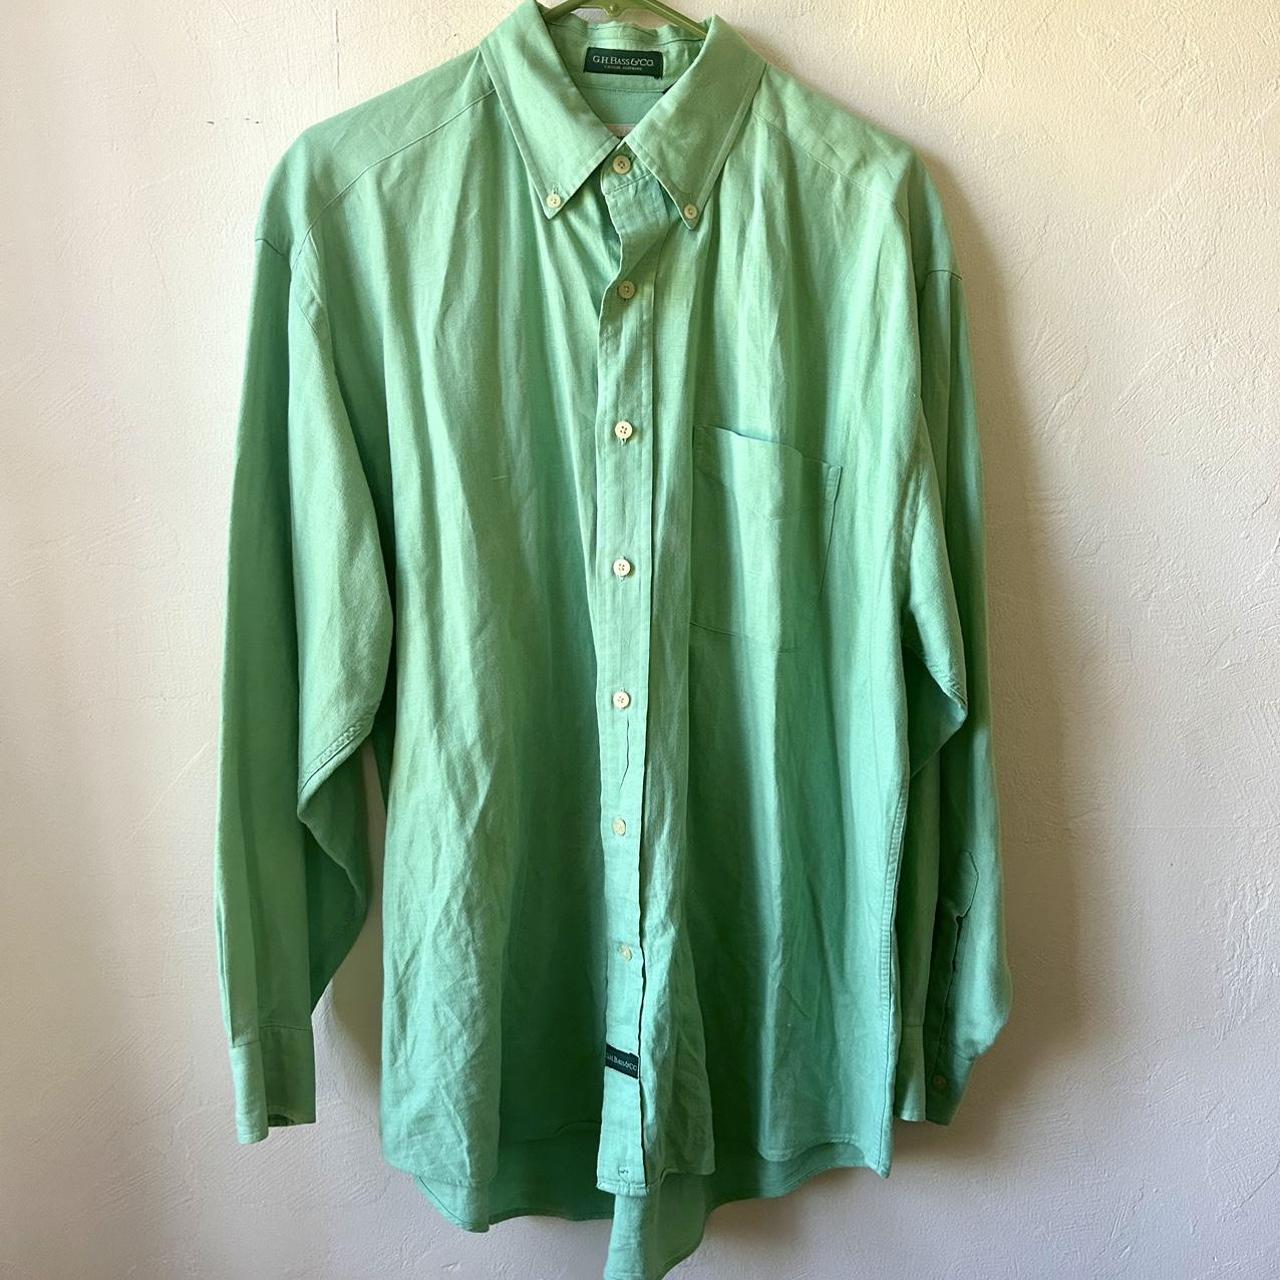 G.H. Bass Men's Green Shirt | Depop